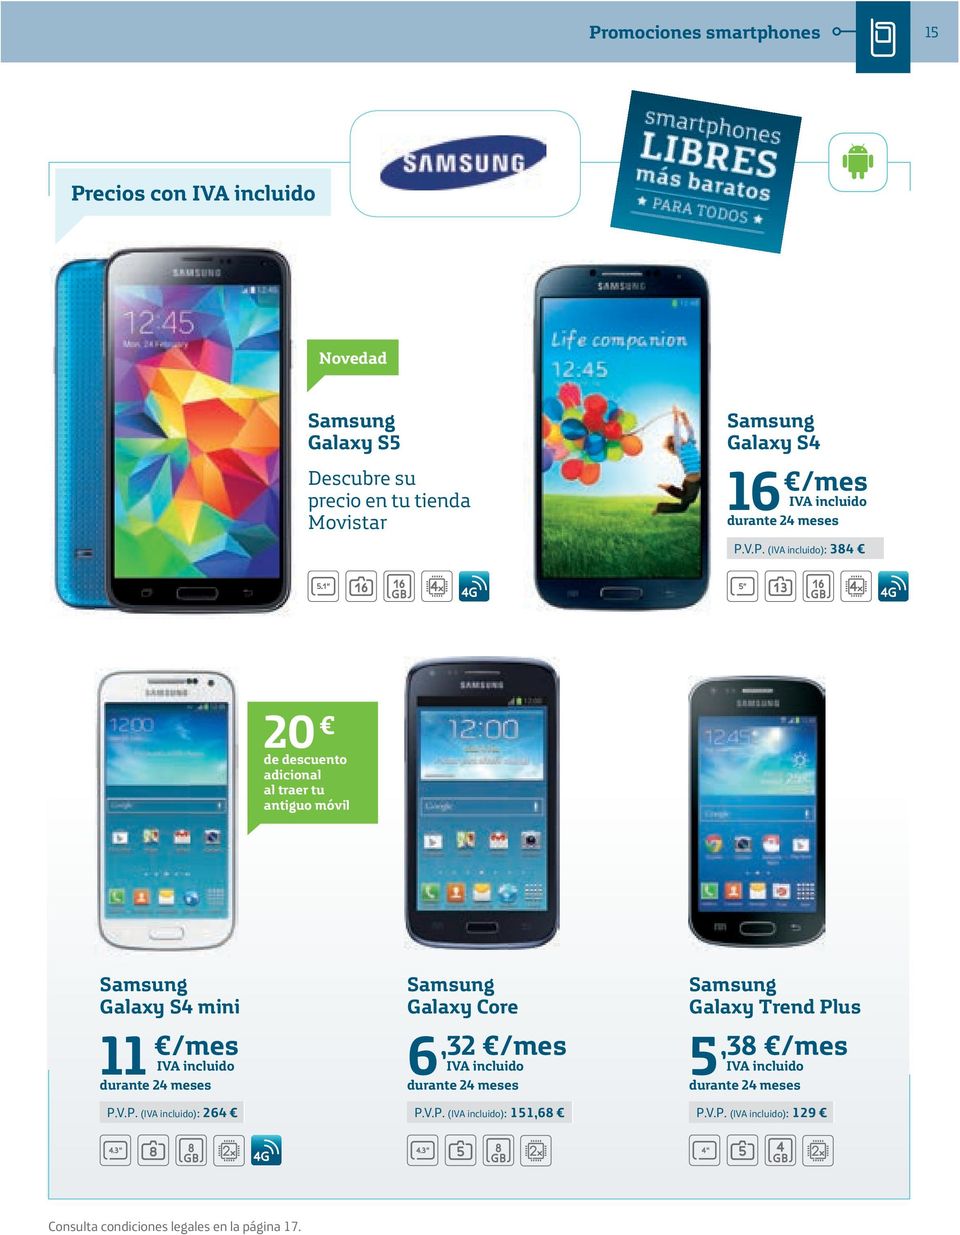 V.P. (): 384 20 de descuento adicional al traer tu antiguo móvil Samsung Galaxy S4